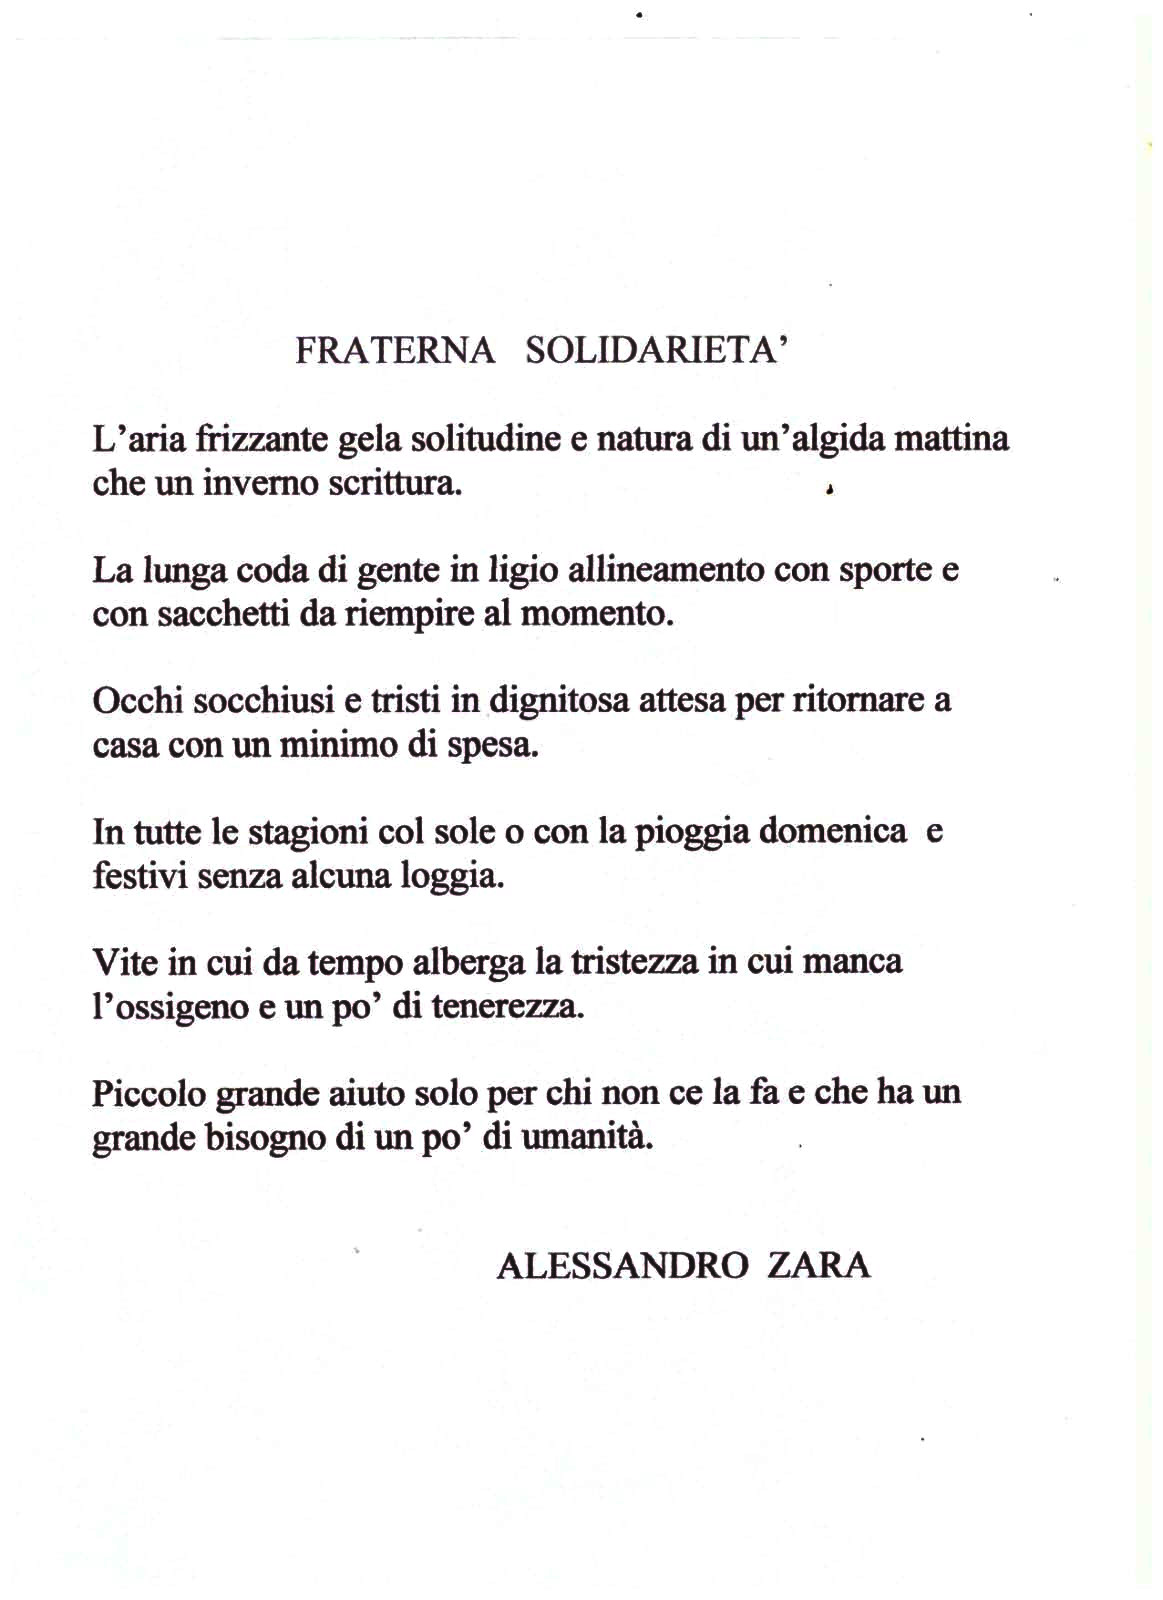 Poesia di Alessandro Zara